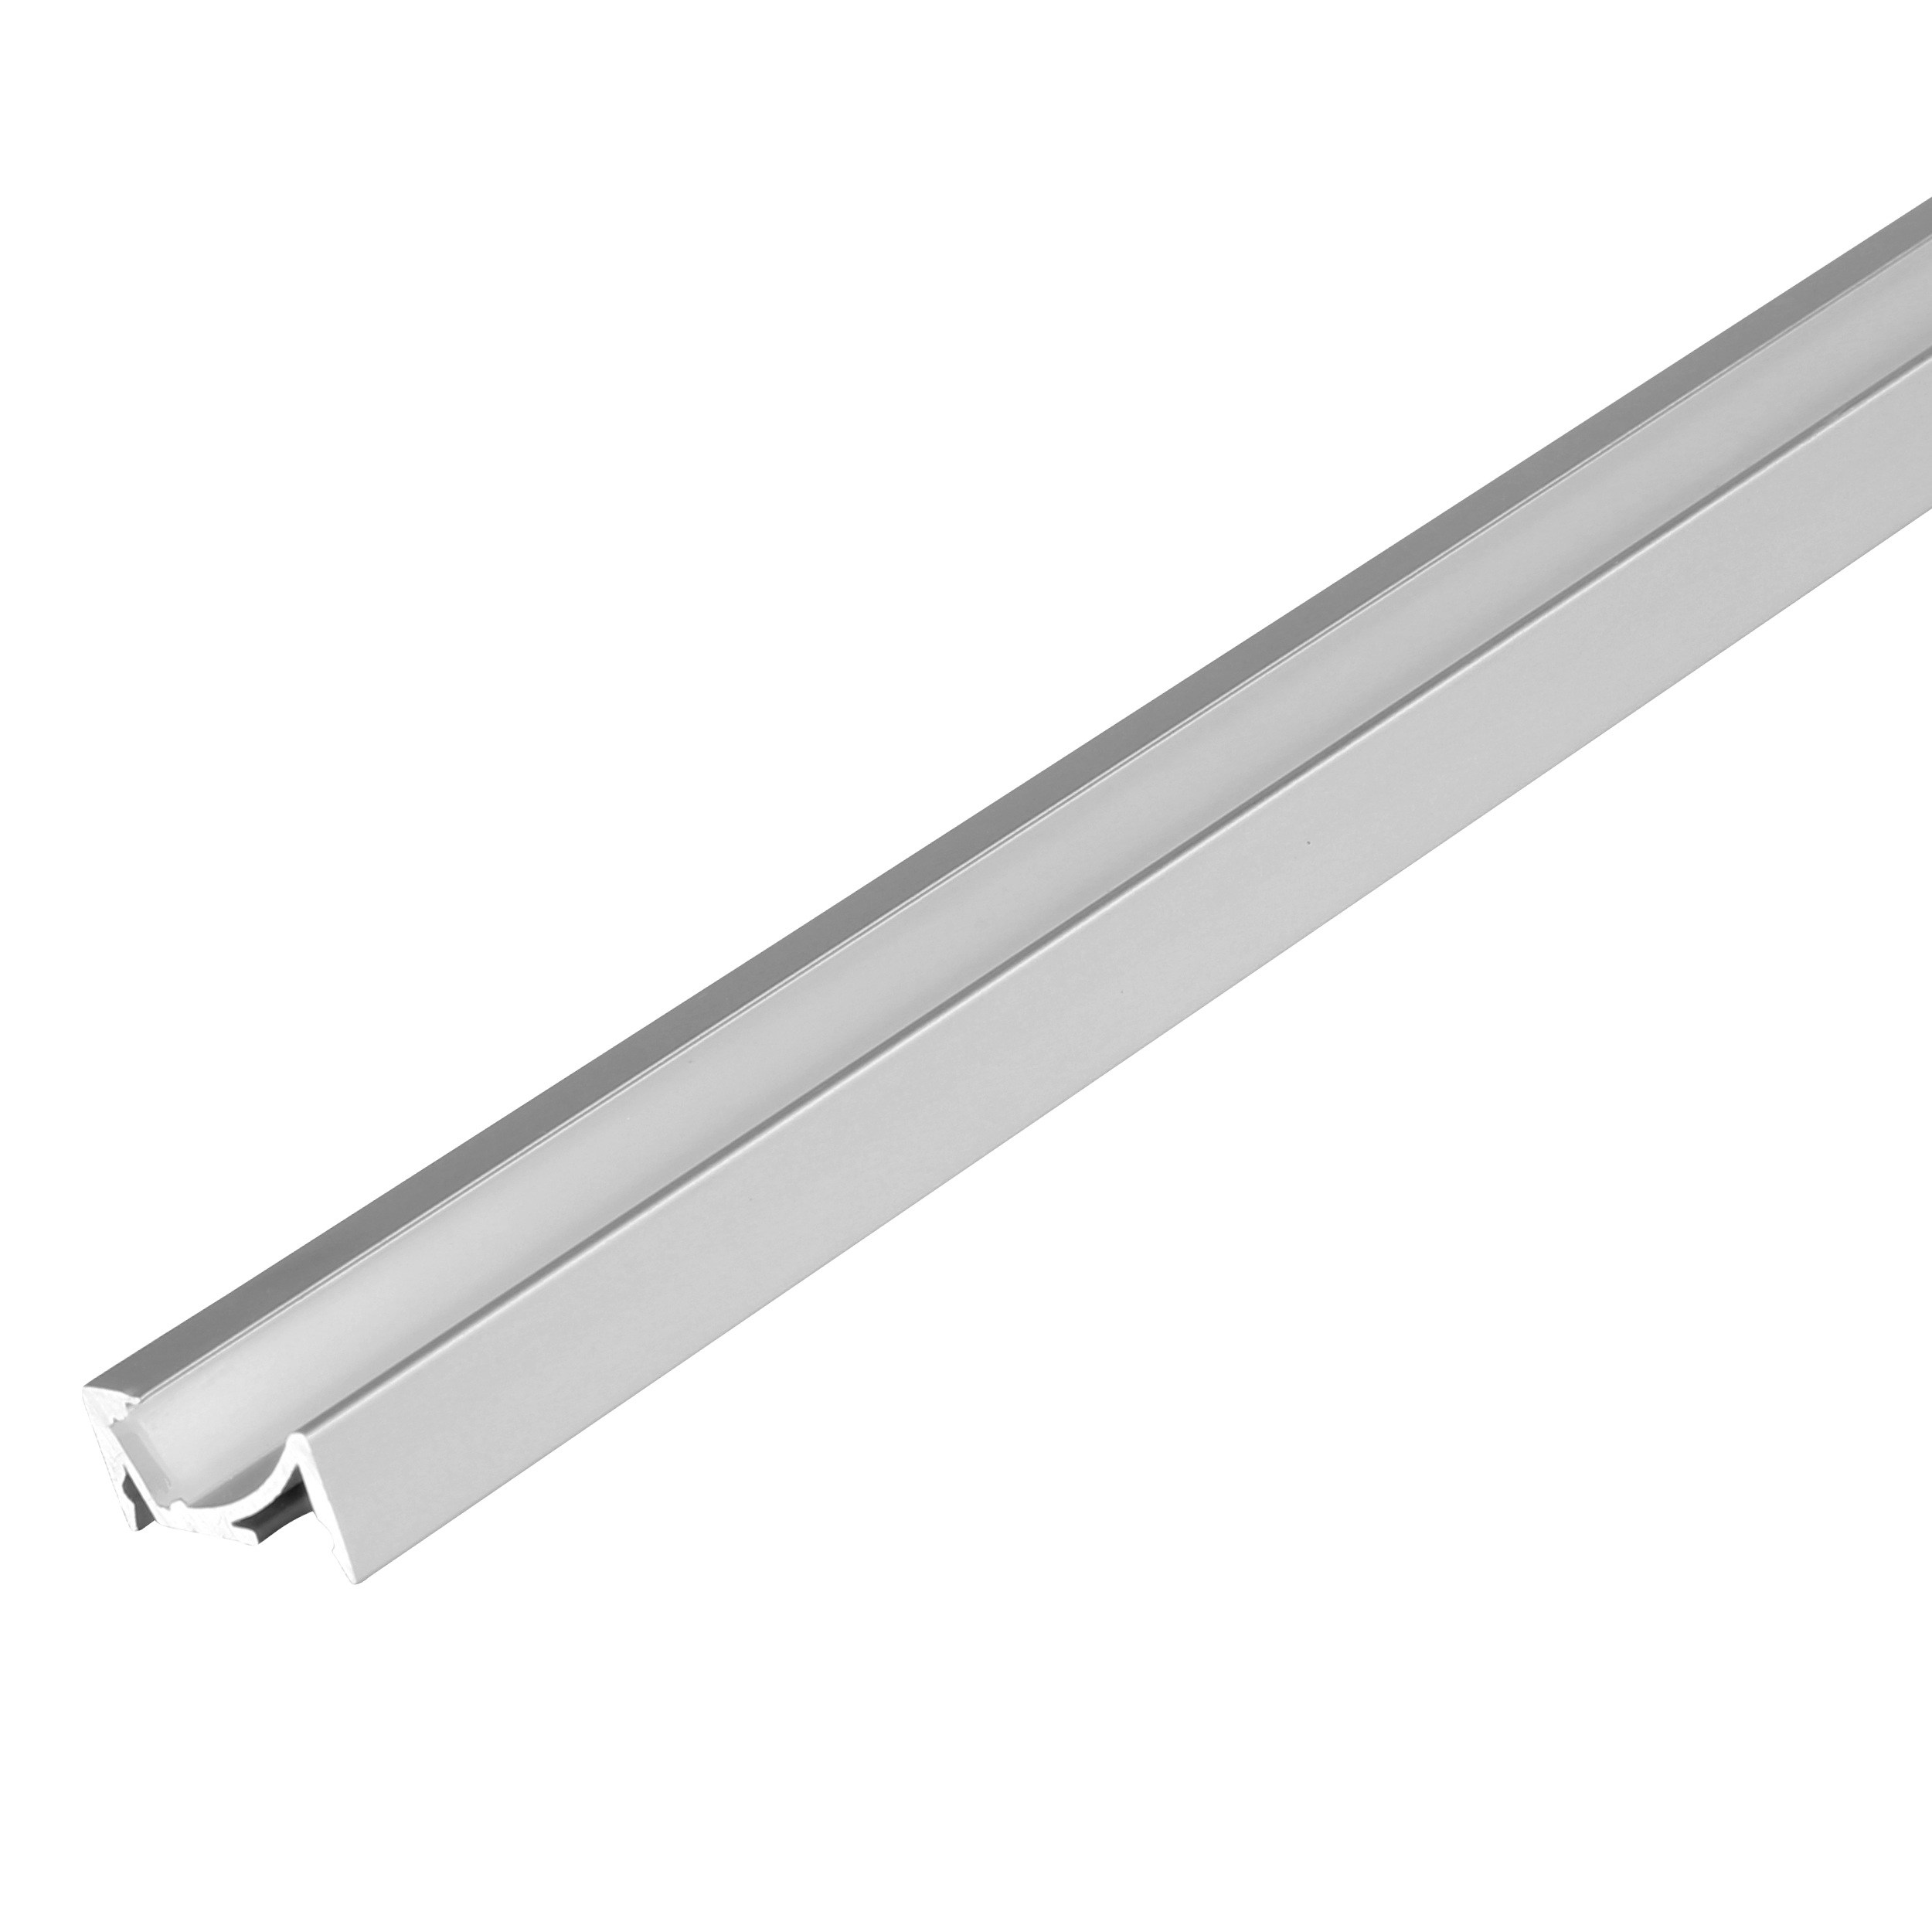 Side emitting LED aluminium extrusion profile cabinet/ exhibit/shelf LED light with sensor switch